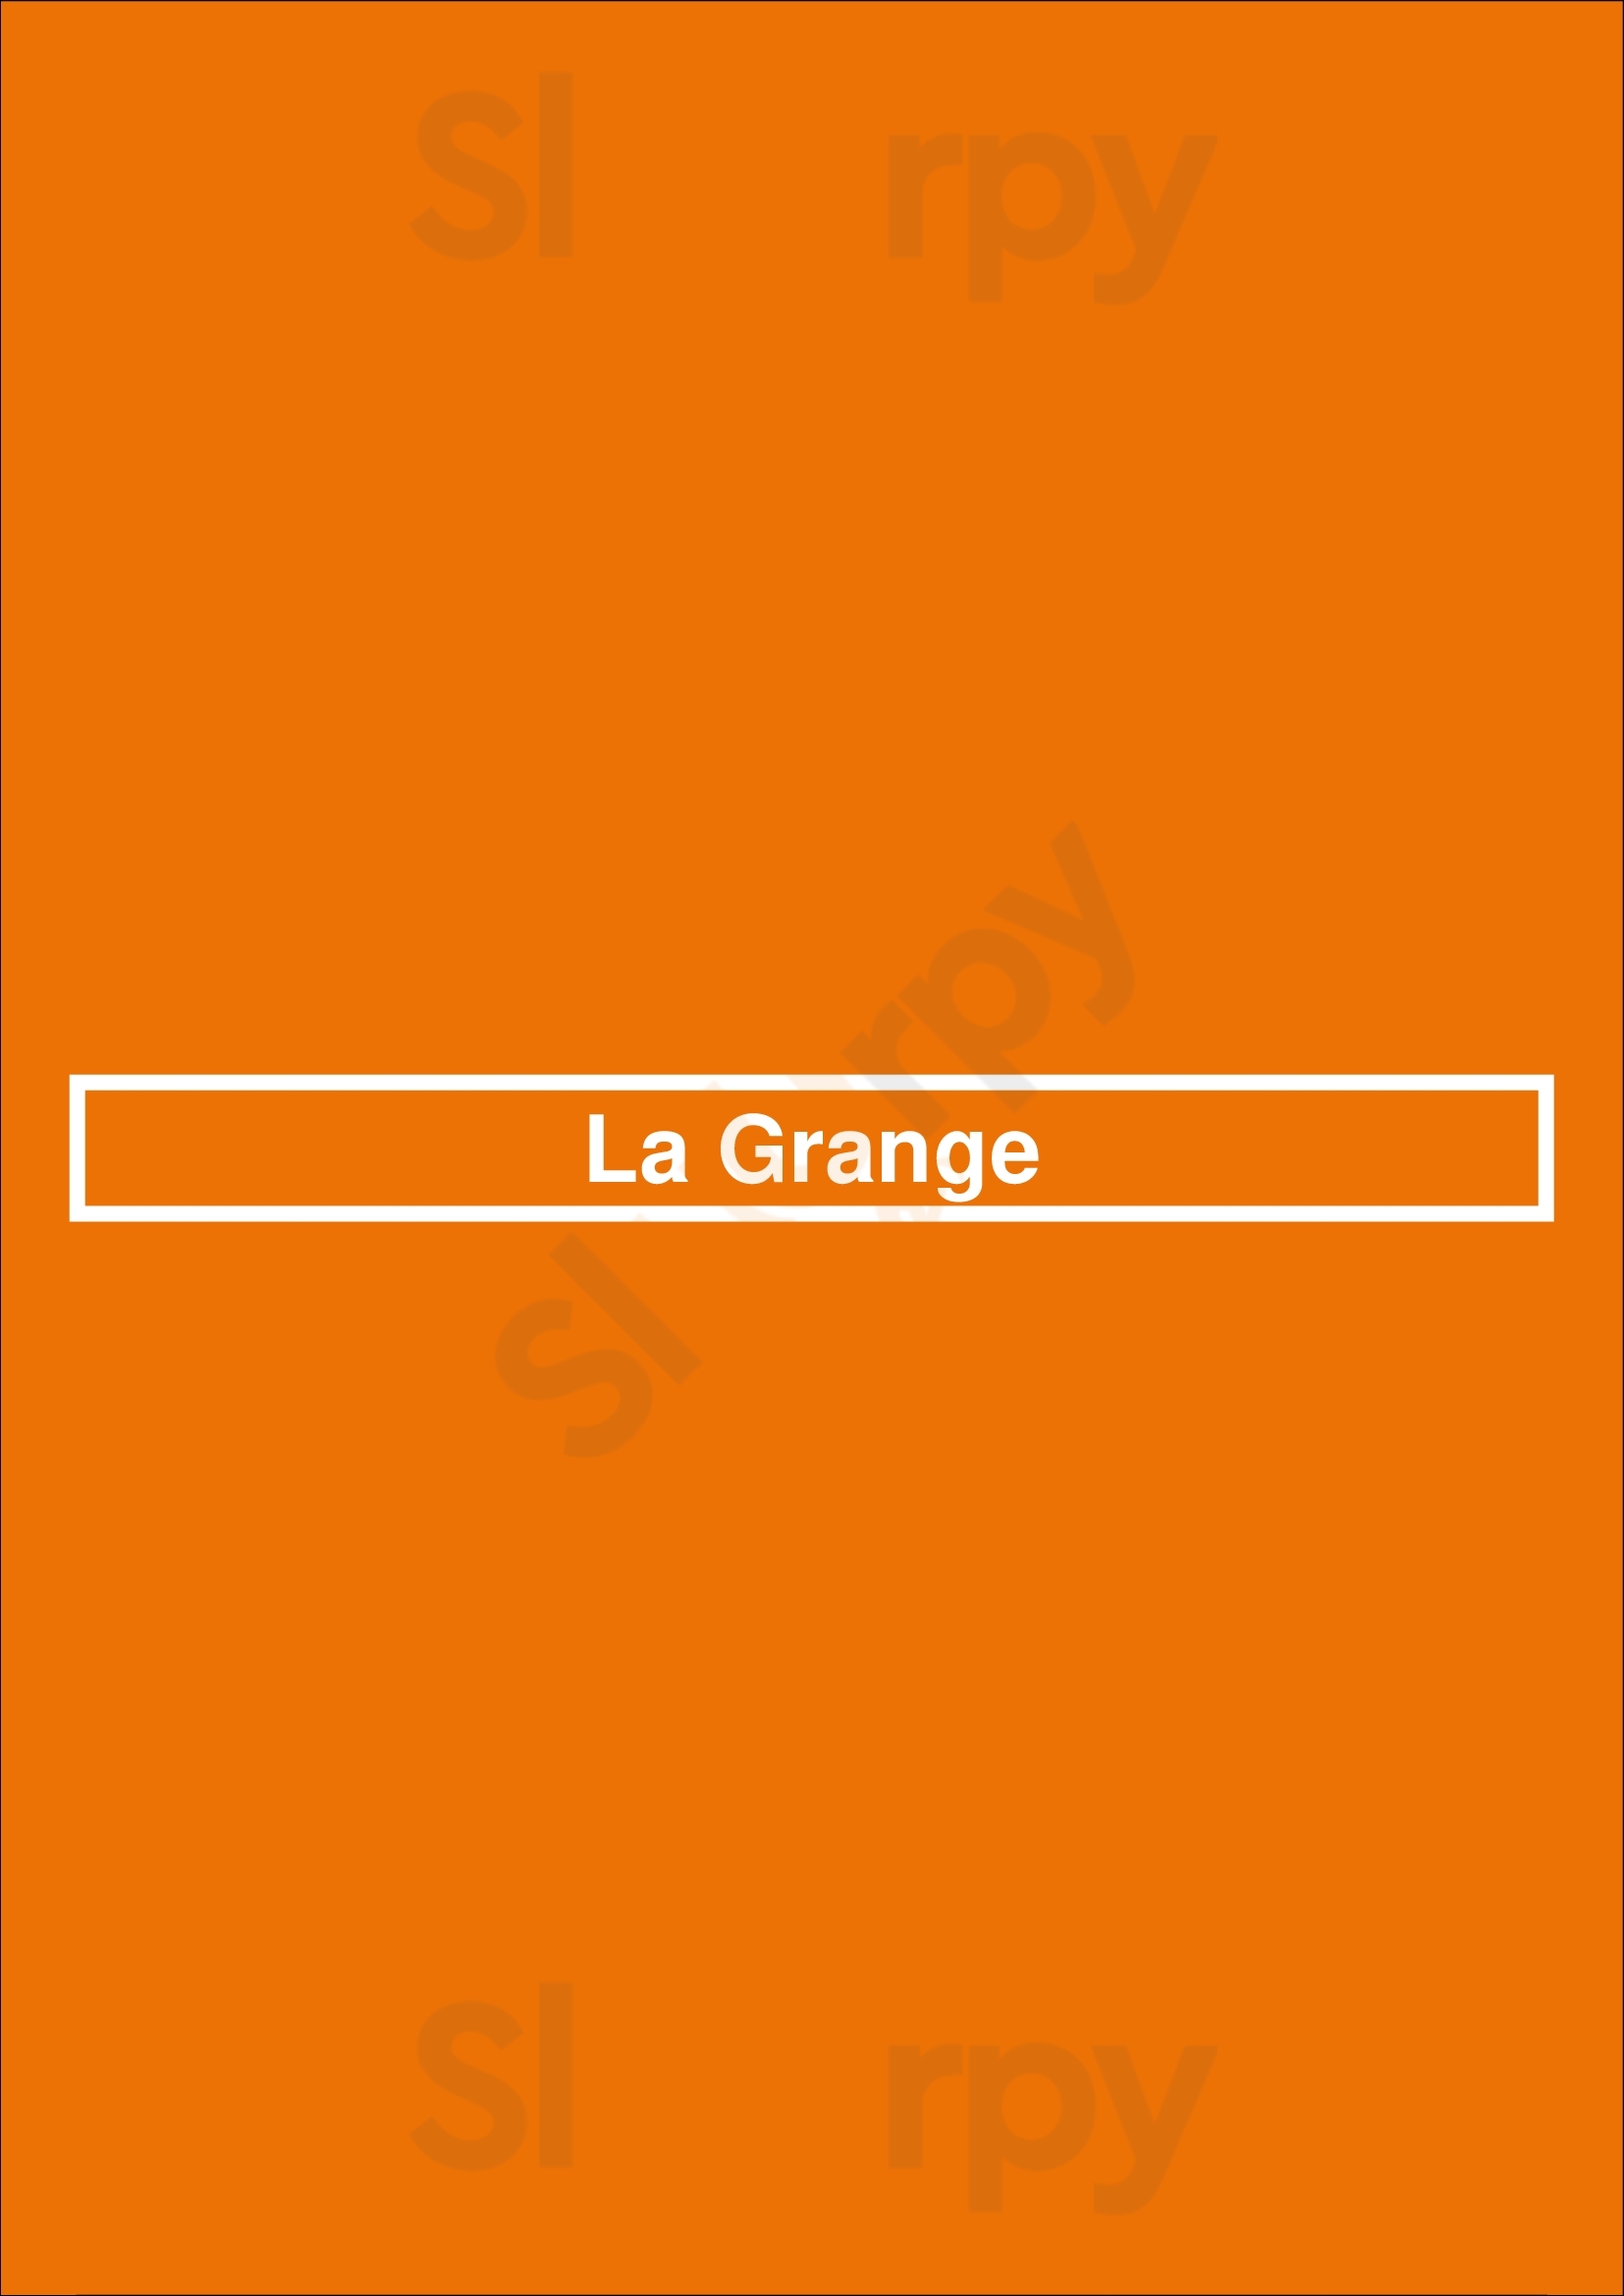 La Grange Quimper Menu - 1